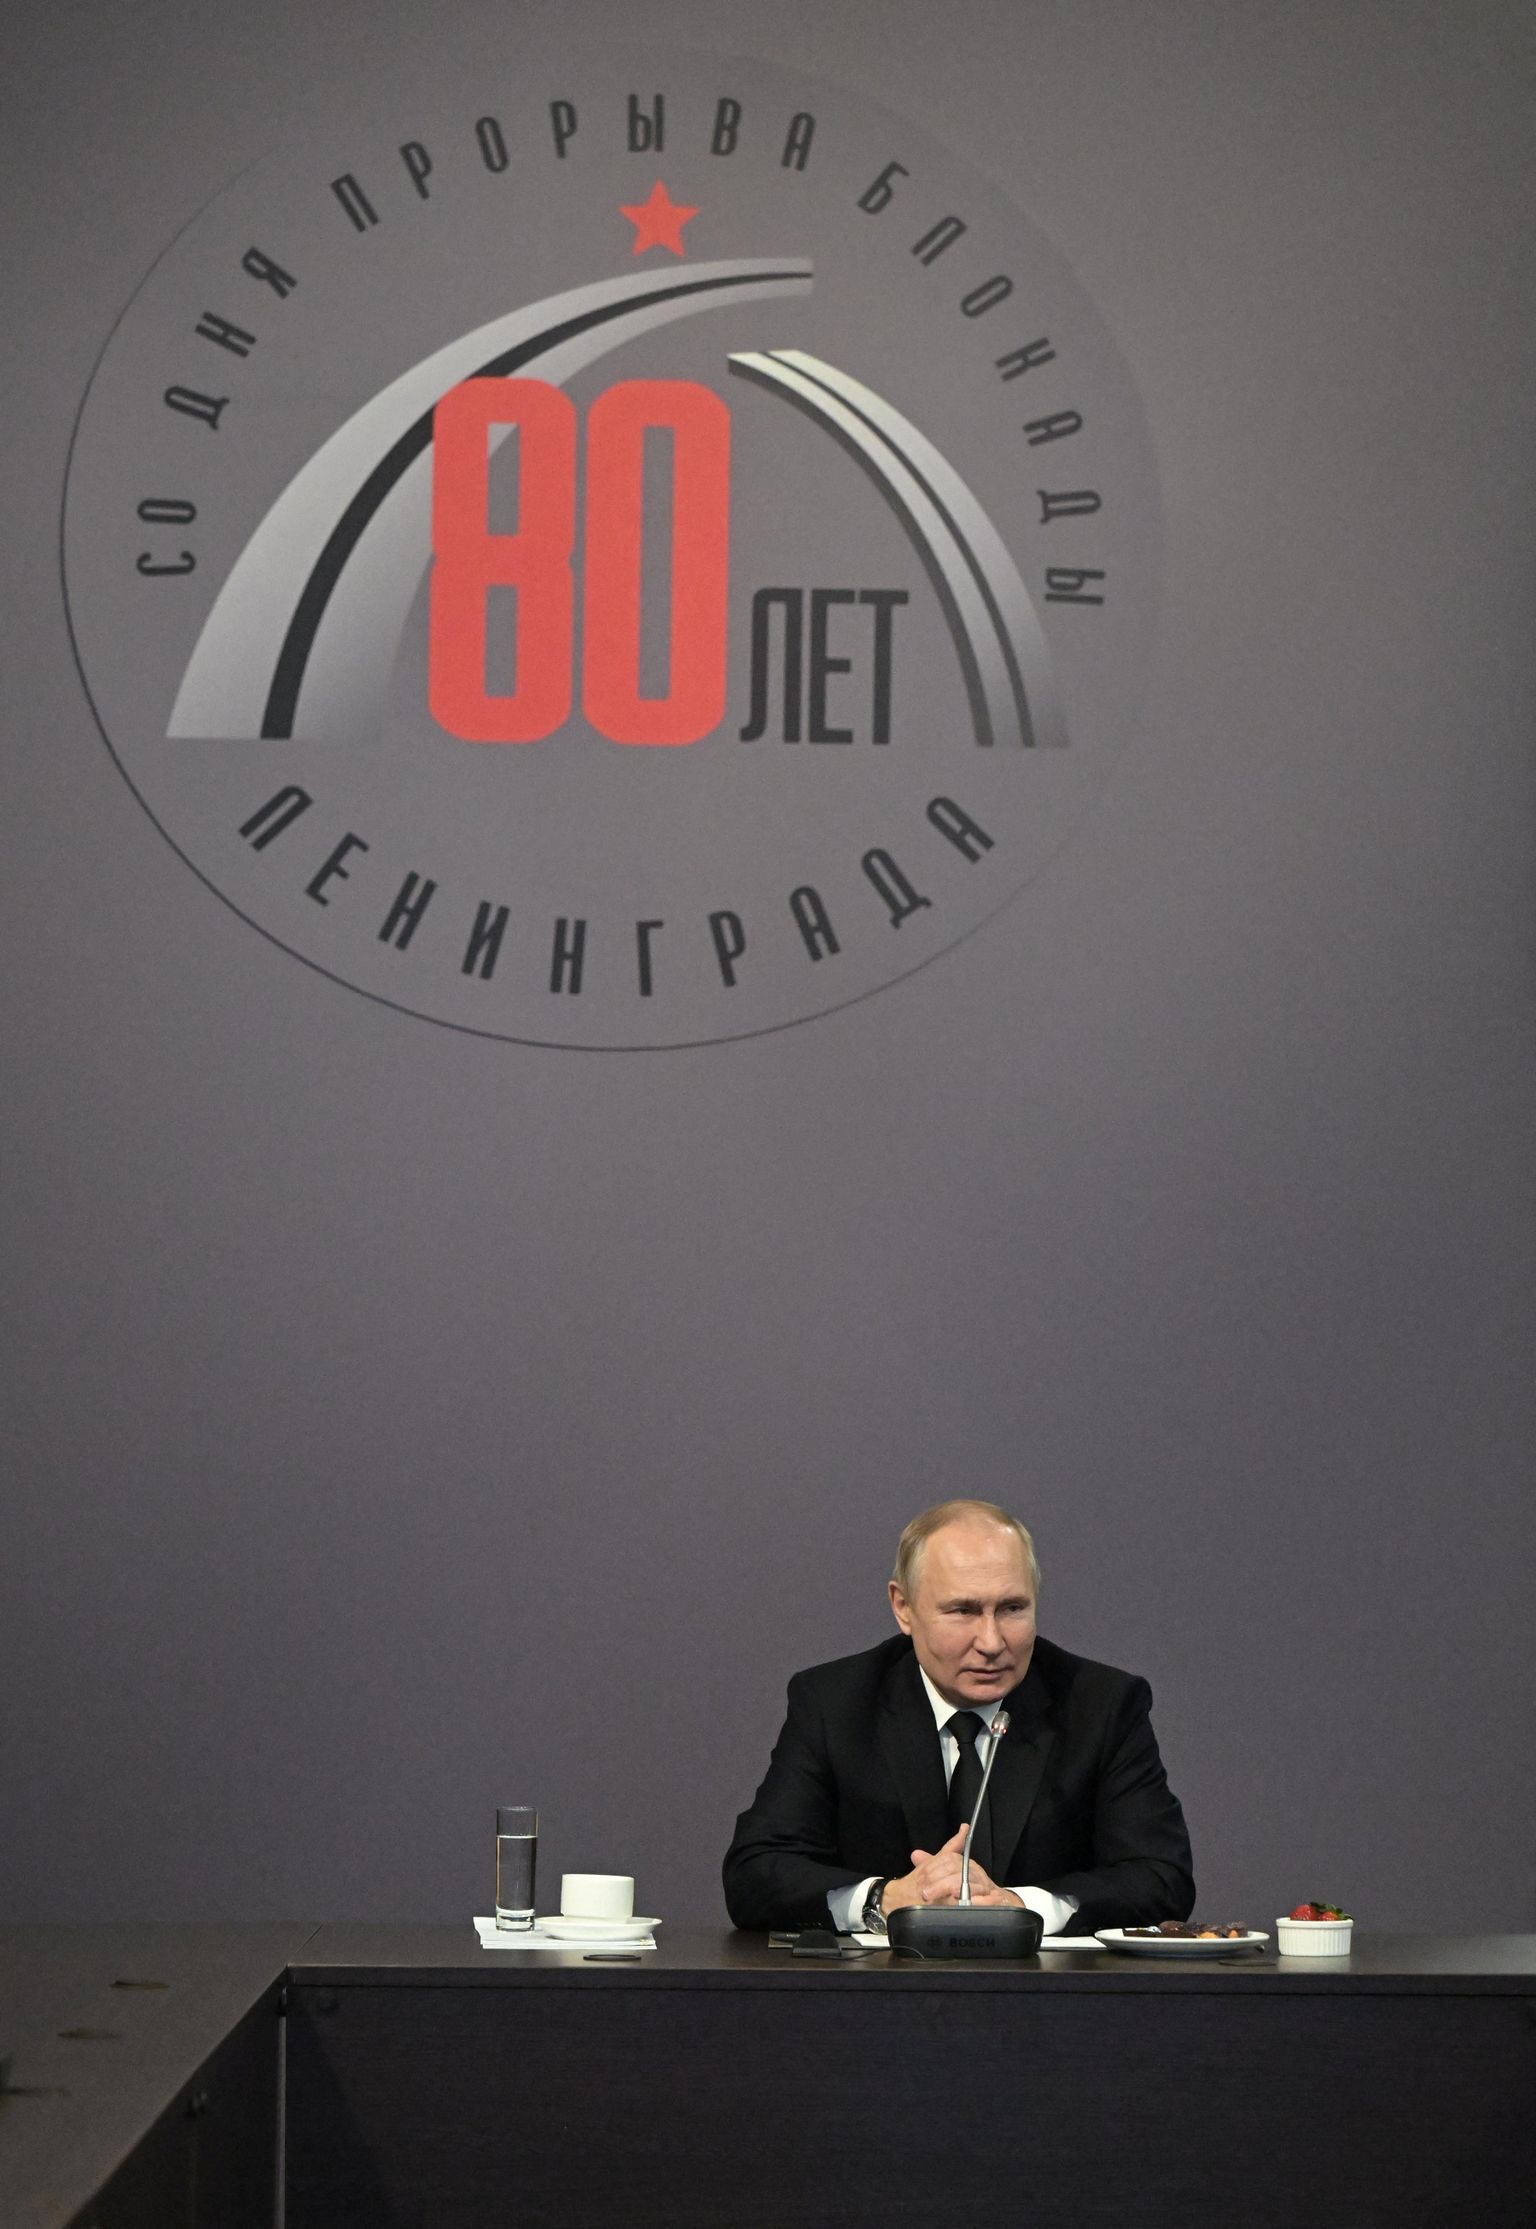 Venemaa president Vladimir Putin Leningradi blokaadi aastapäevale pühendatud üritusel Peterburis 18. jaanuaril 2023.